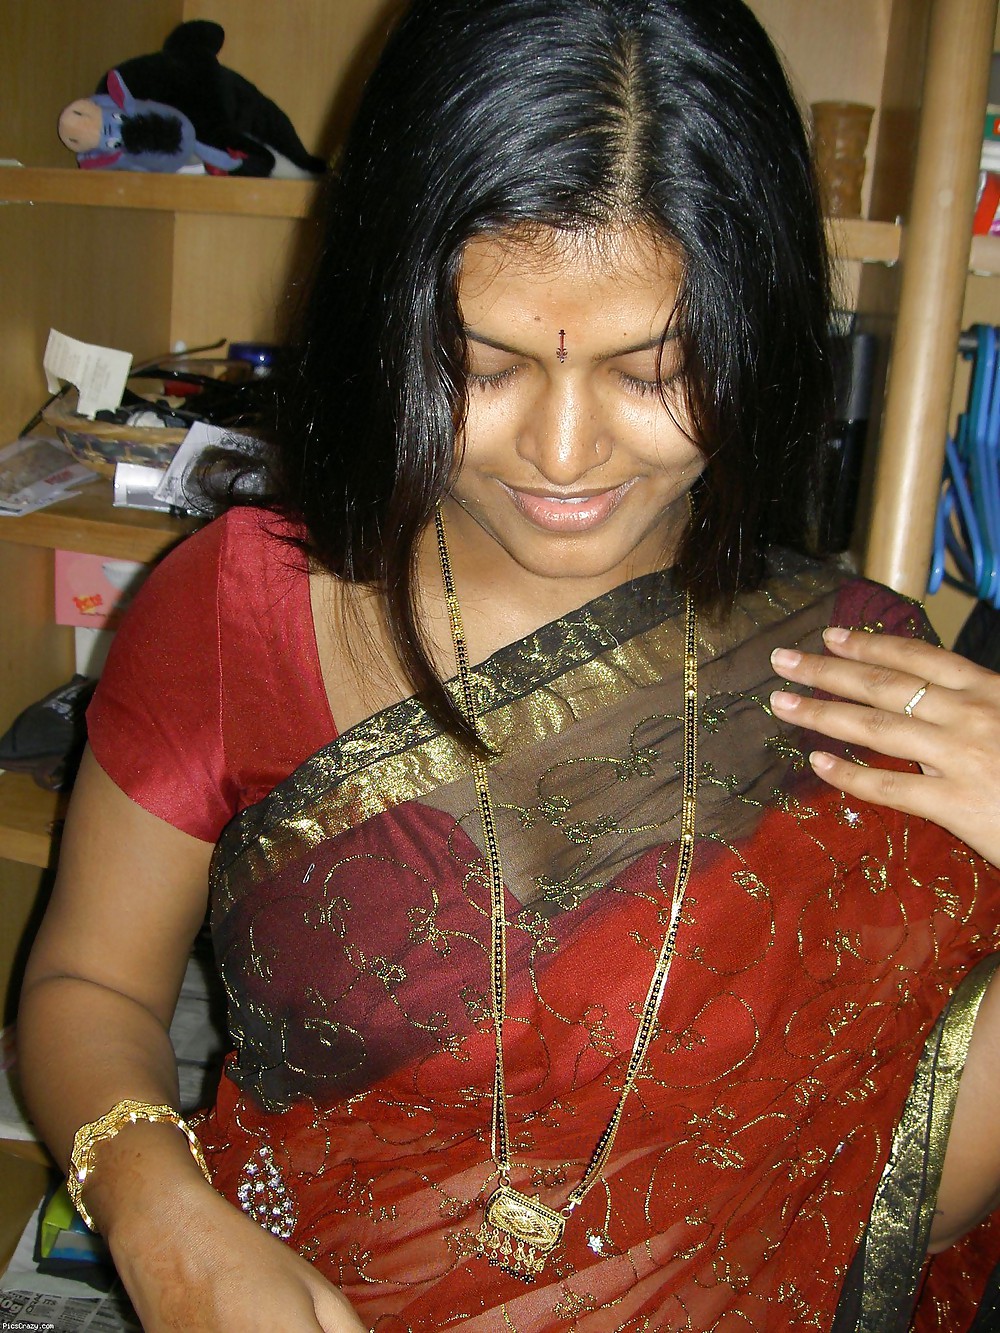 ARPITA - HOT INDIAN WIFE #5841354